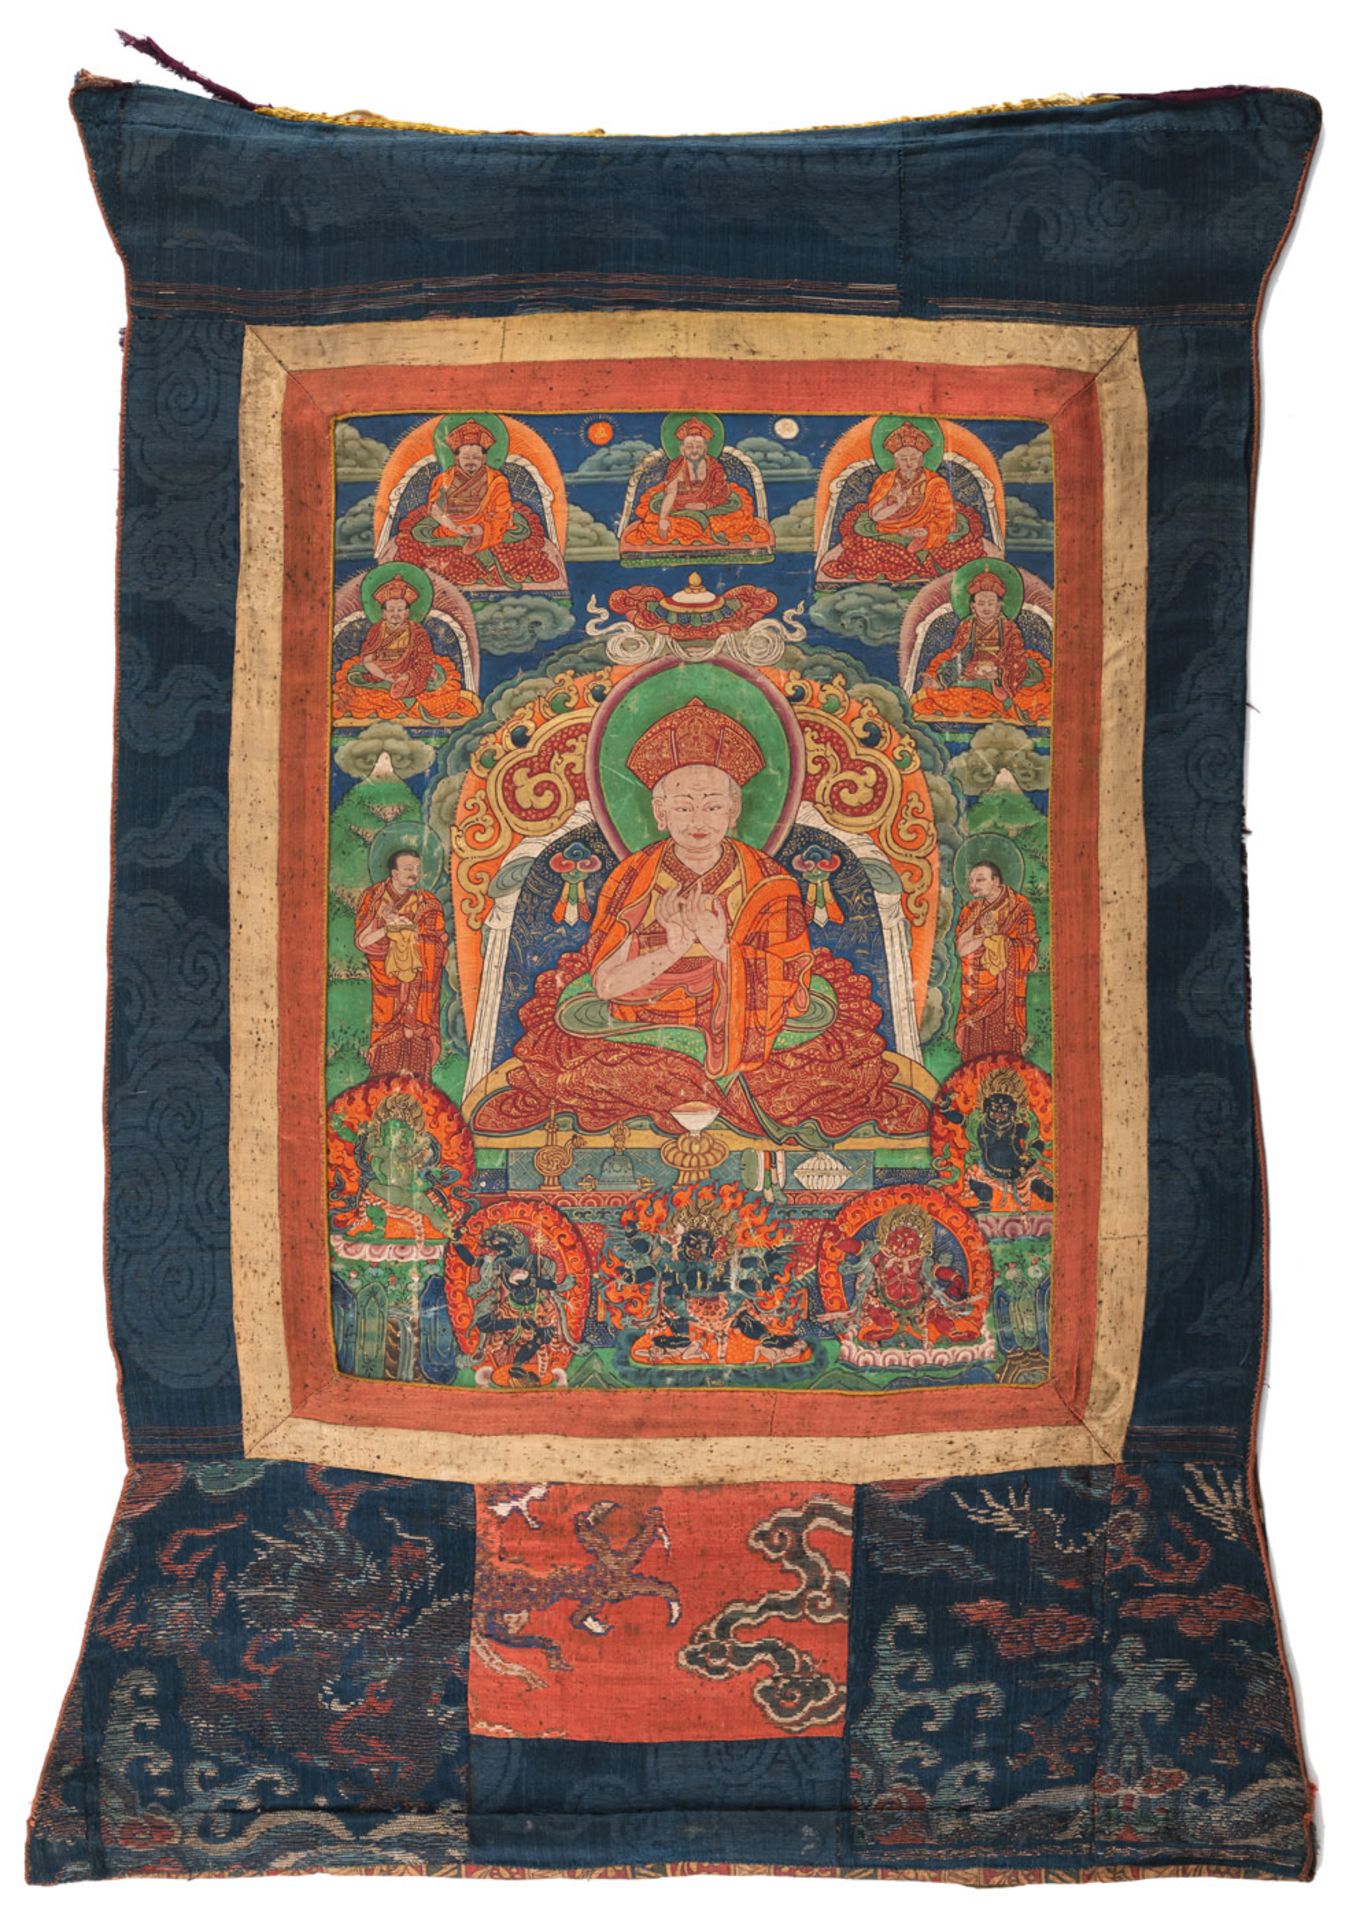 Linienthangka aus der Drukpa-Kagyü Tradition in Bhutan - Bild 2 aus 4